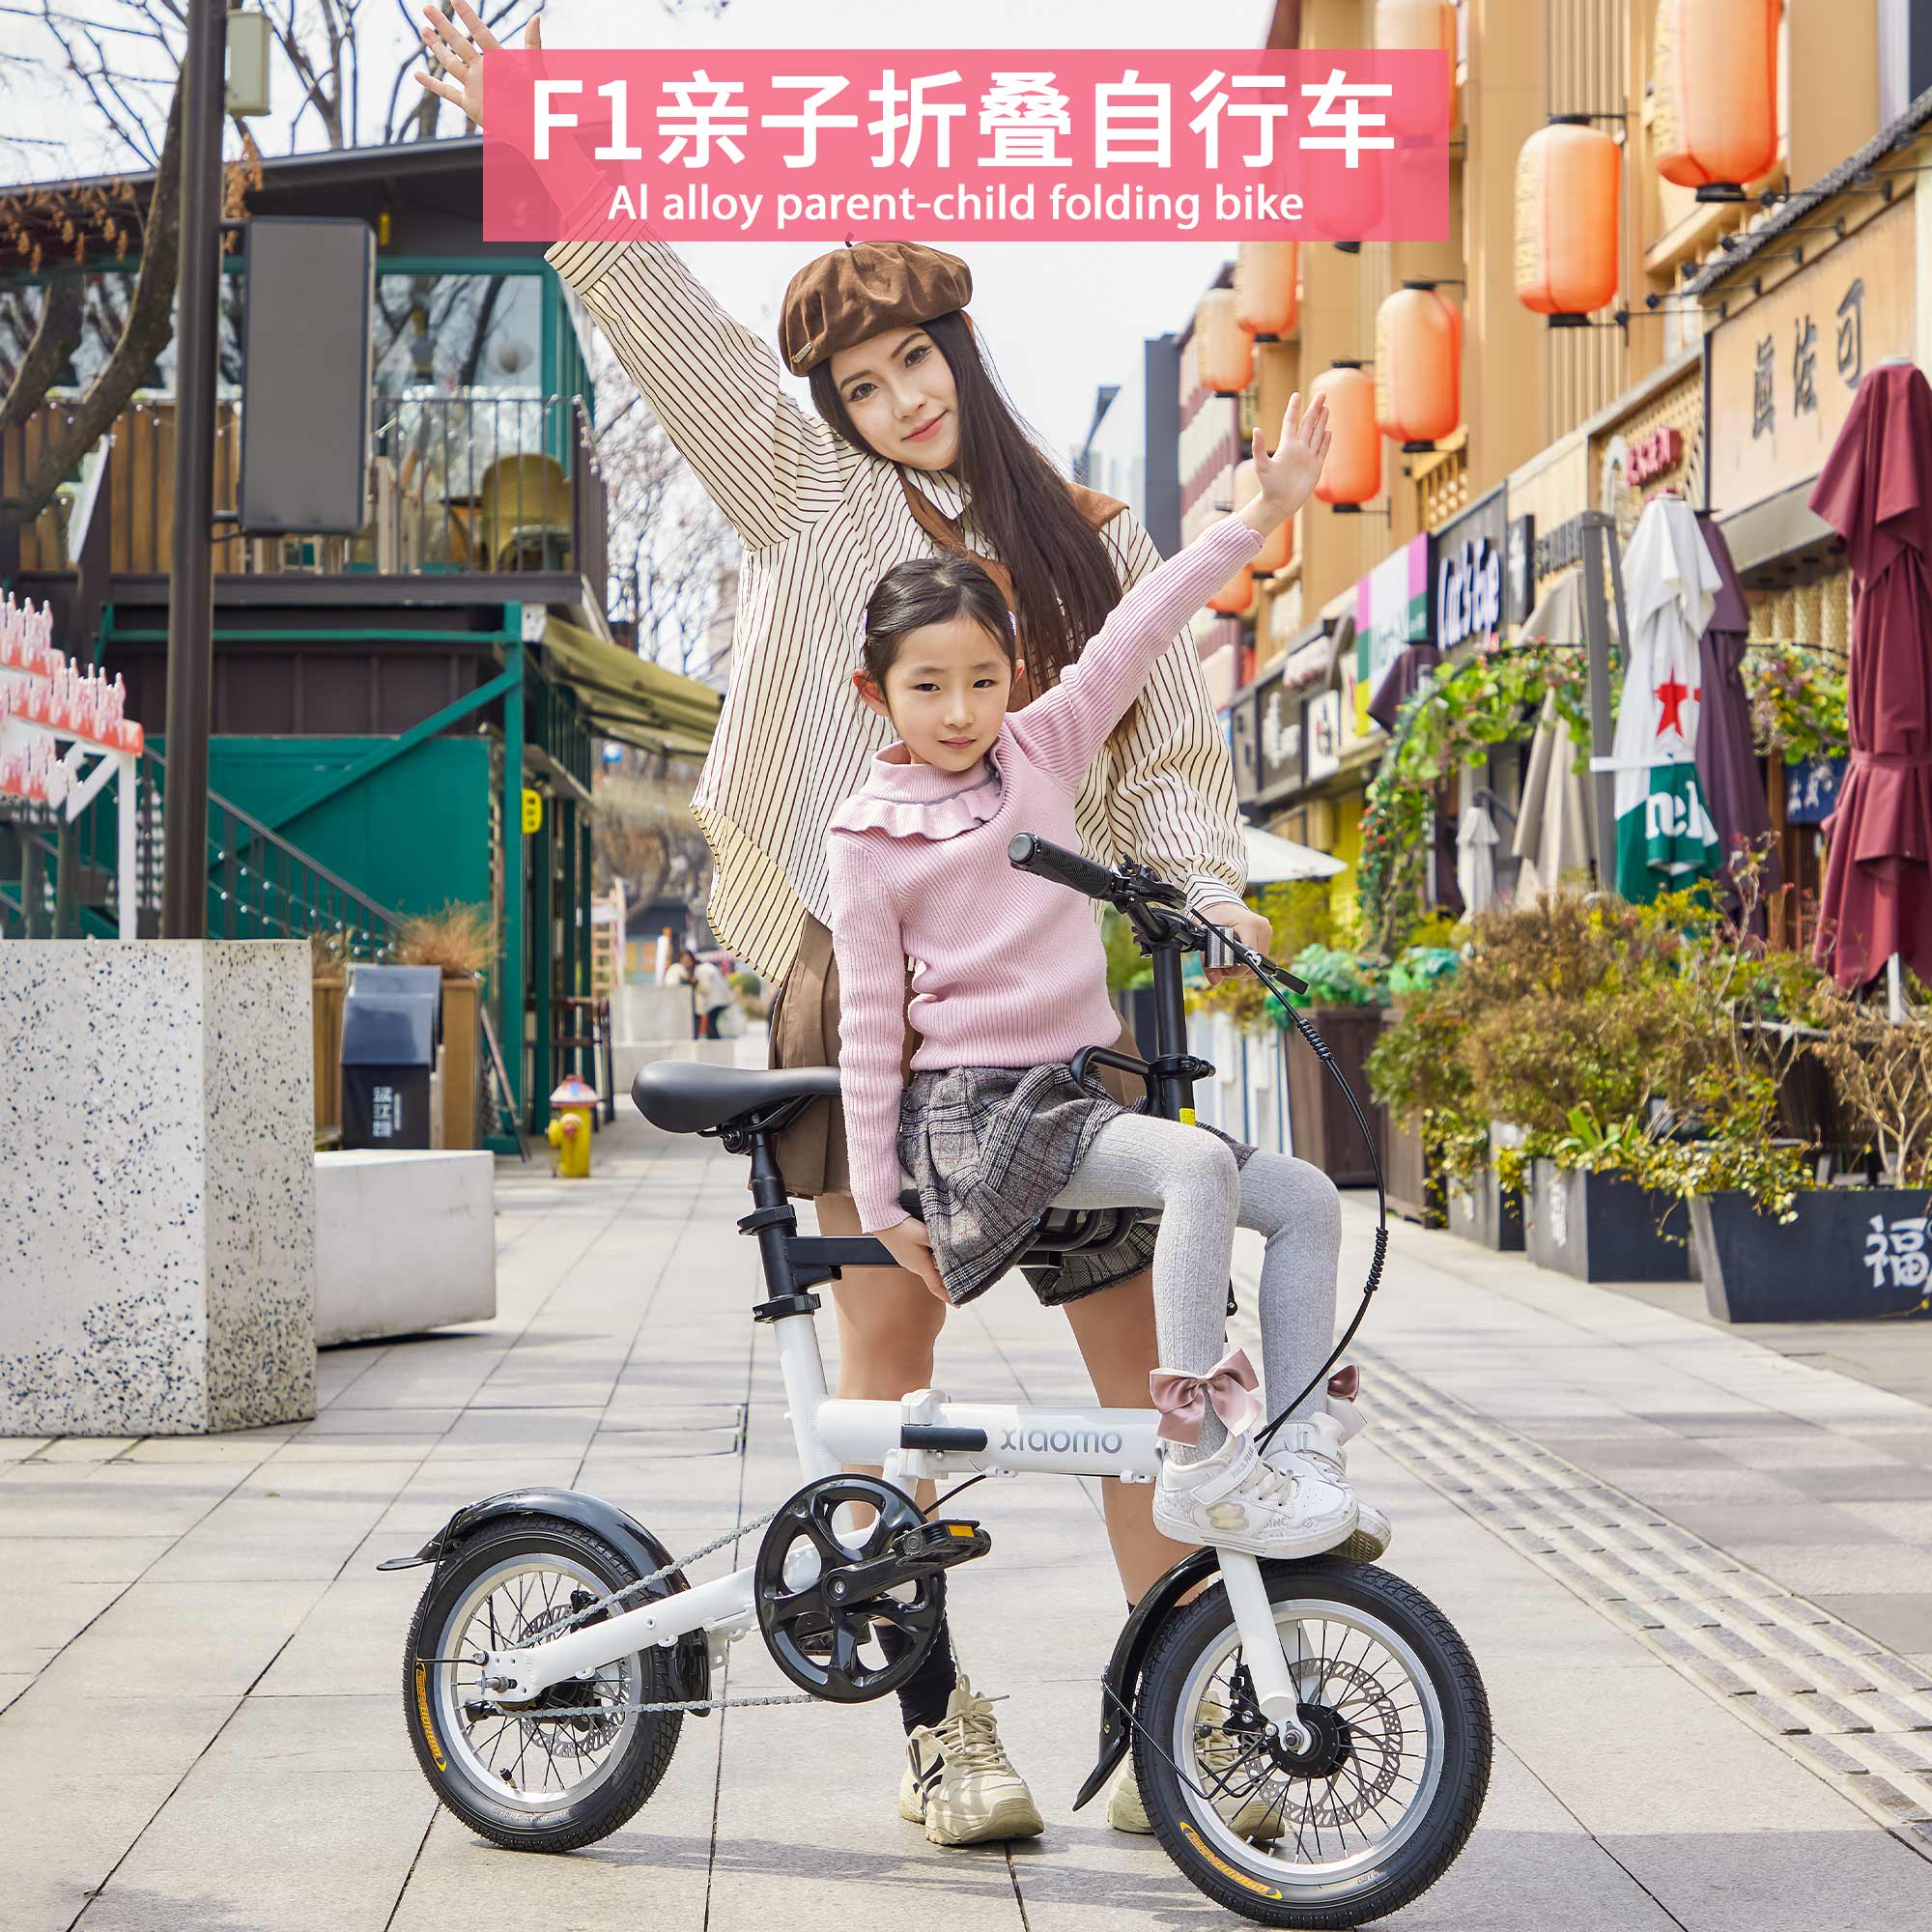 迷你超轻便携折叠自行车14寸成人学生男女脚踏车亲子载娃自行单车